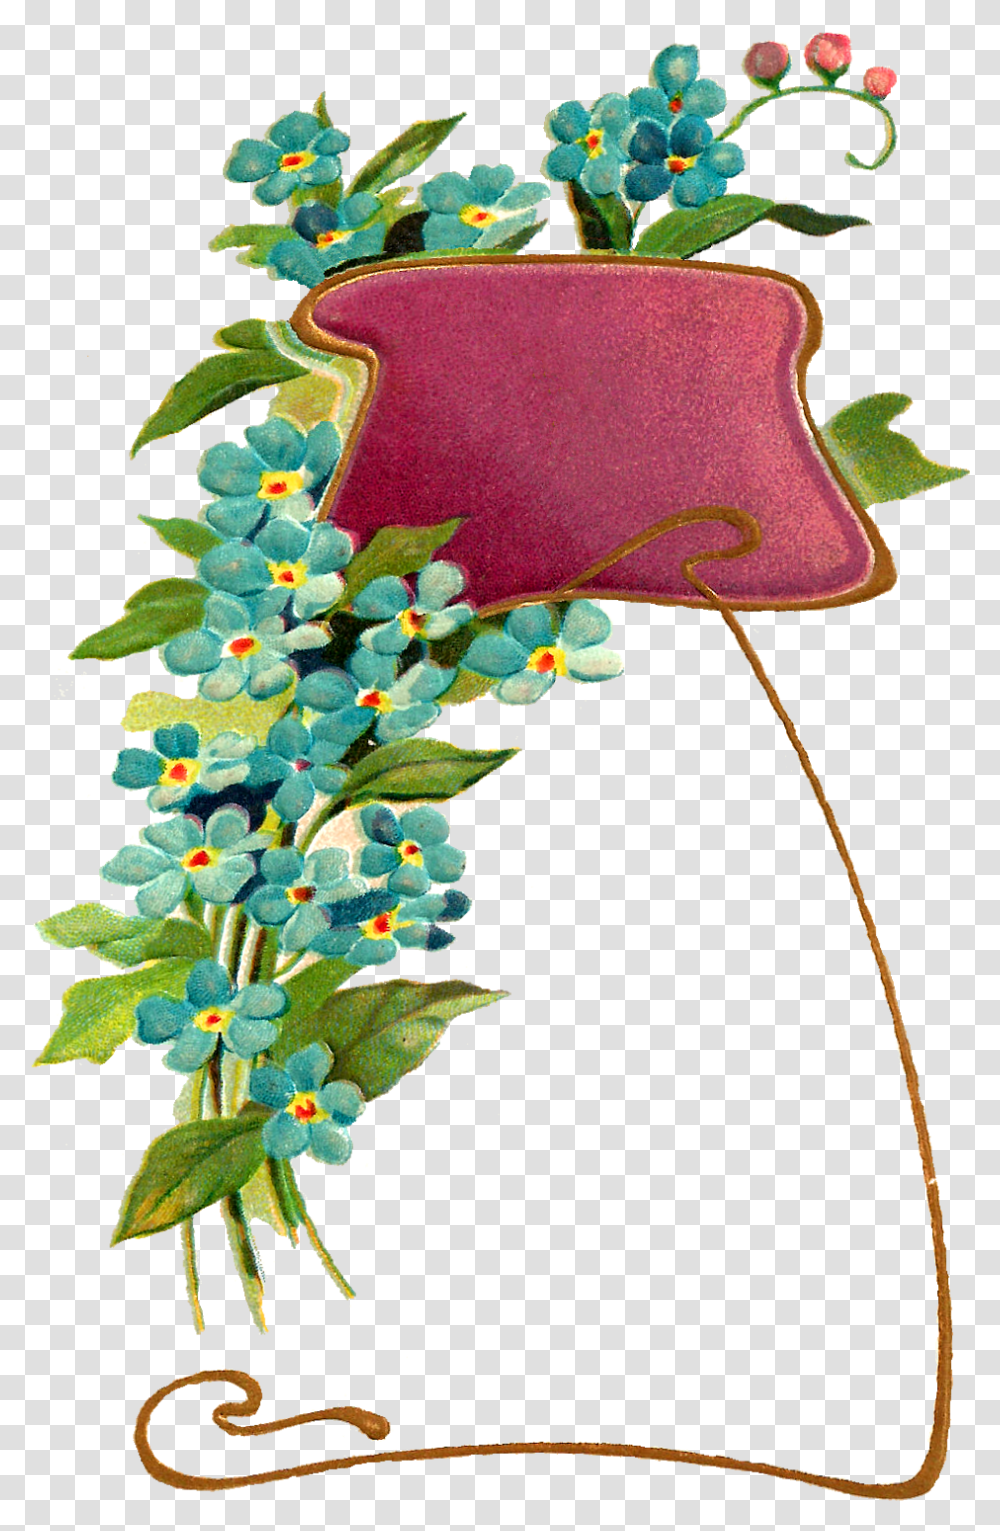 Flower Frame Digital Image Geburtstag Jugendstil, Plant, Petal, Iris, Leaf Transparent Png